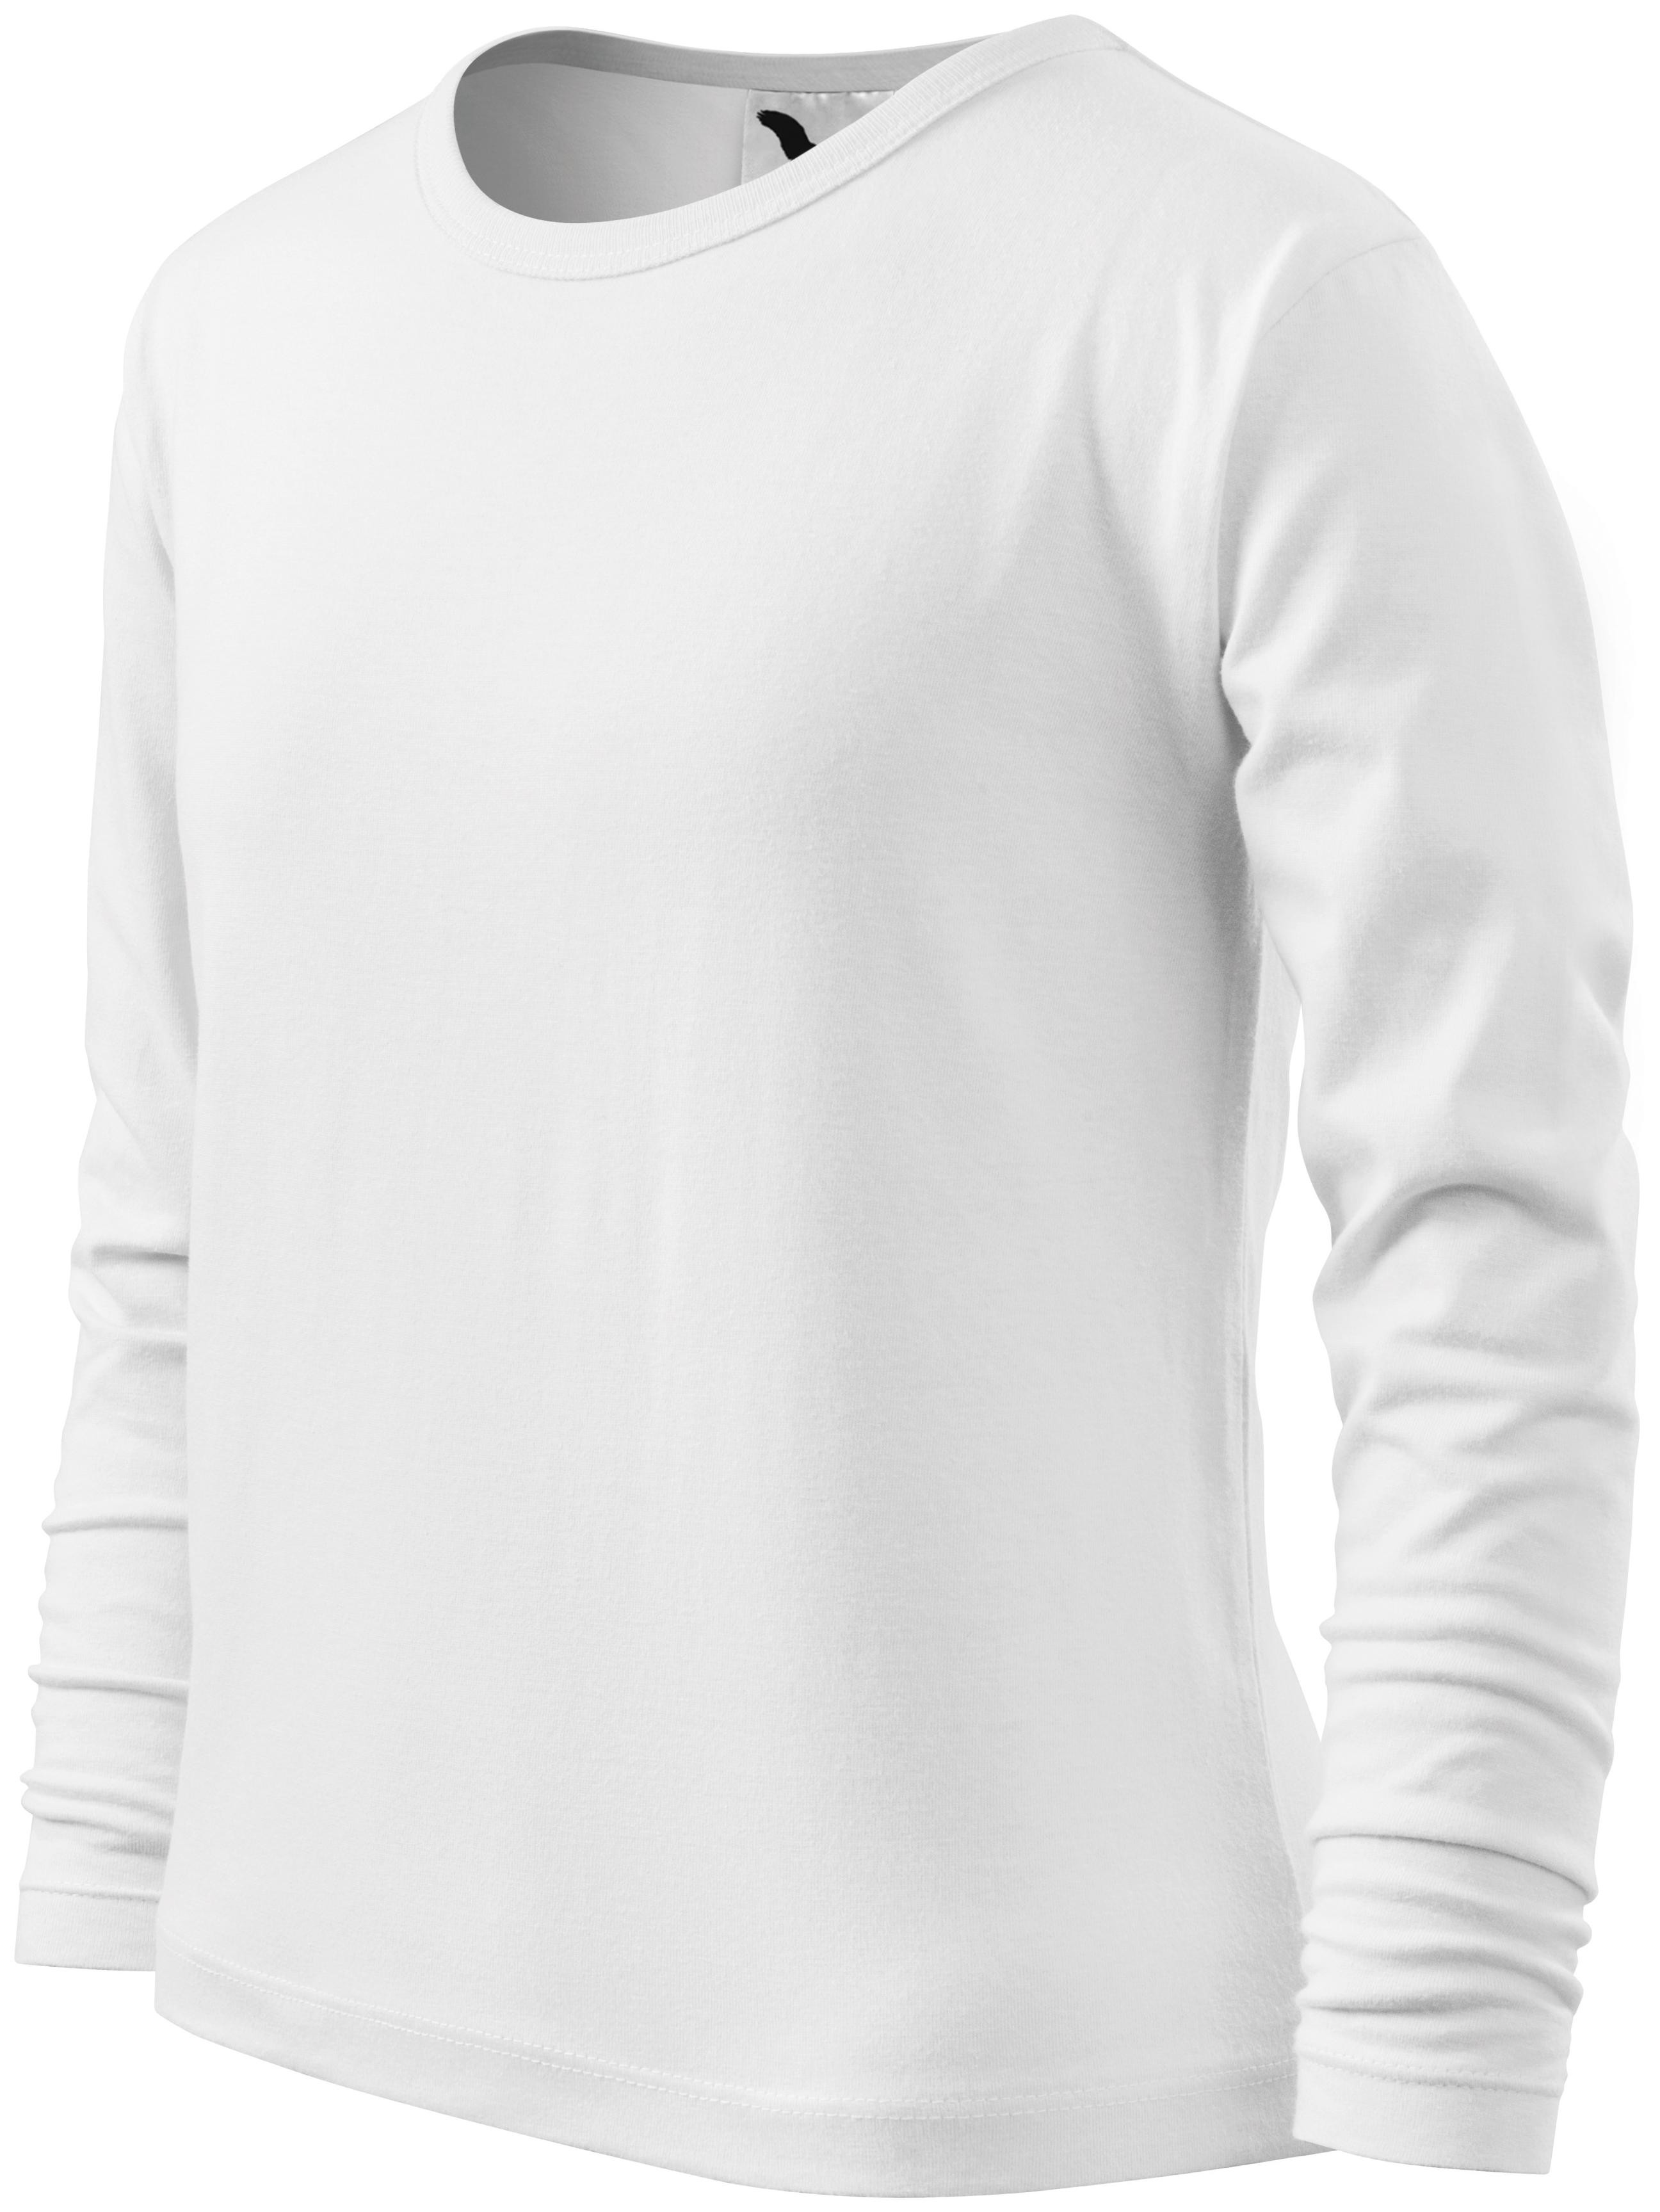 Detské tričko s dlhým rukávom, biela, 110cm / 4roky